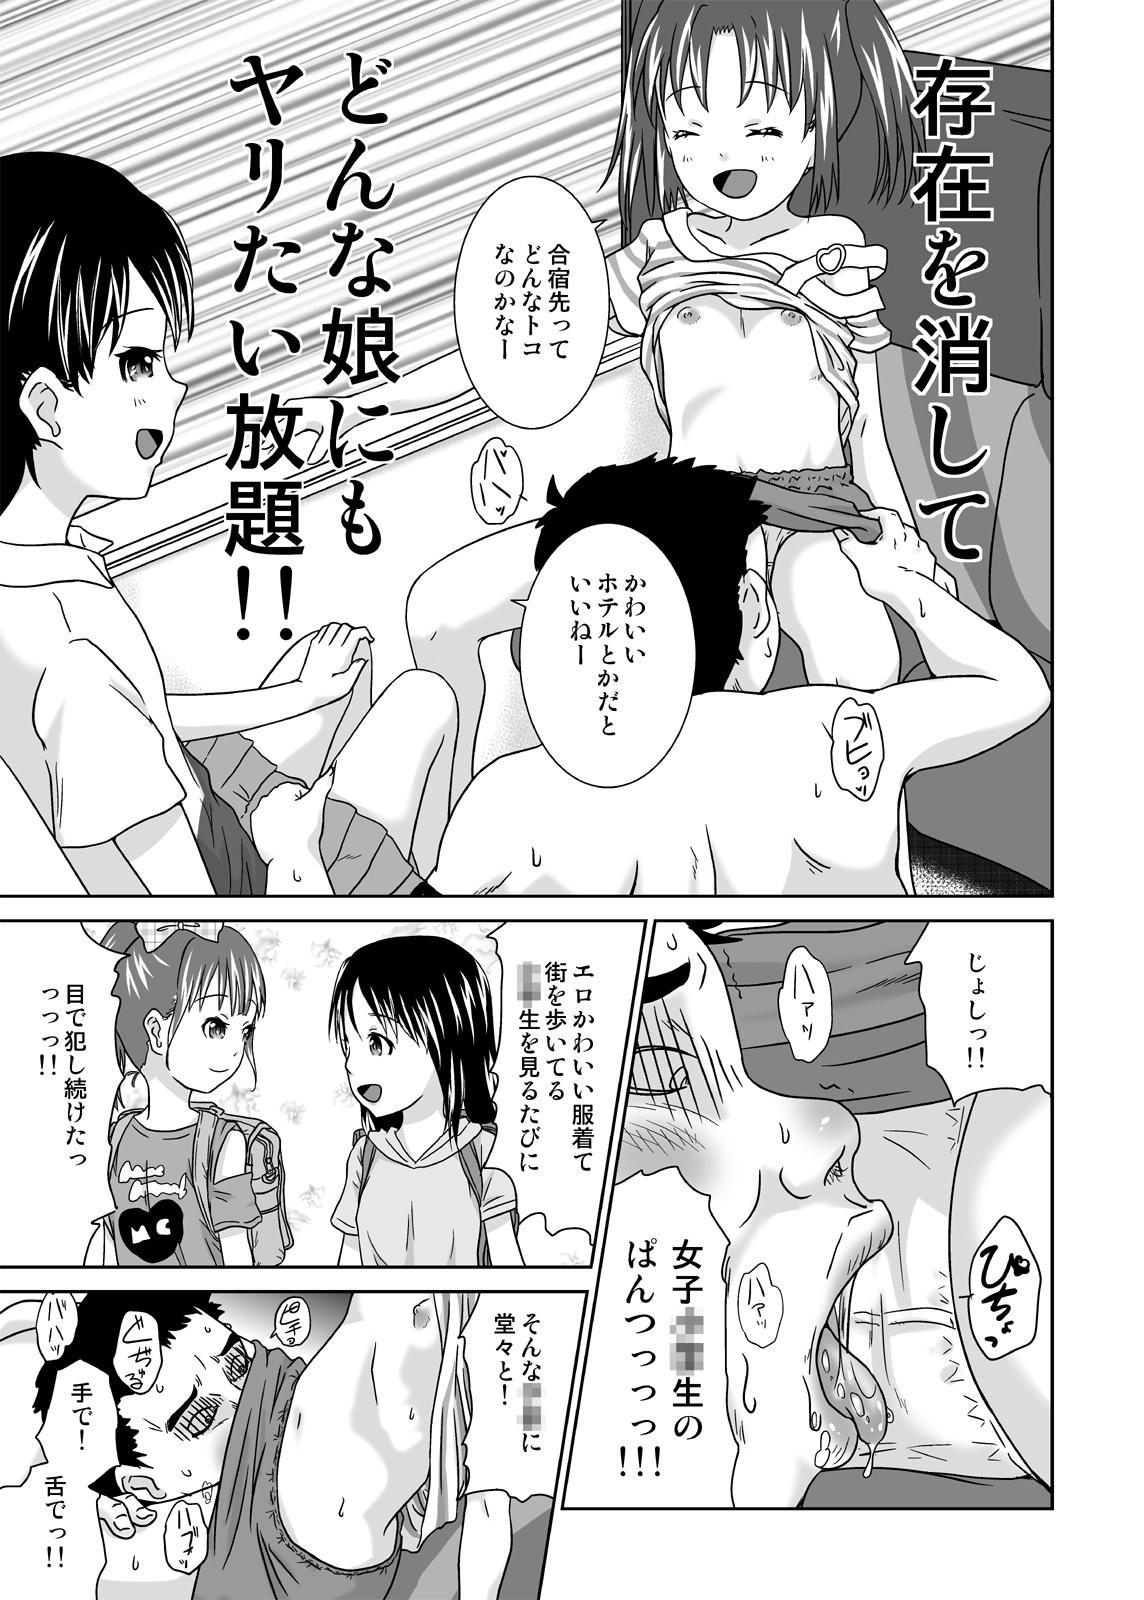 Desperate Daremo Boku ni Kizukanu Sekai 4 Gangbang - Page 5